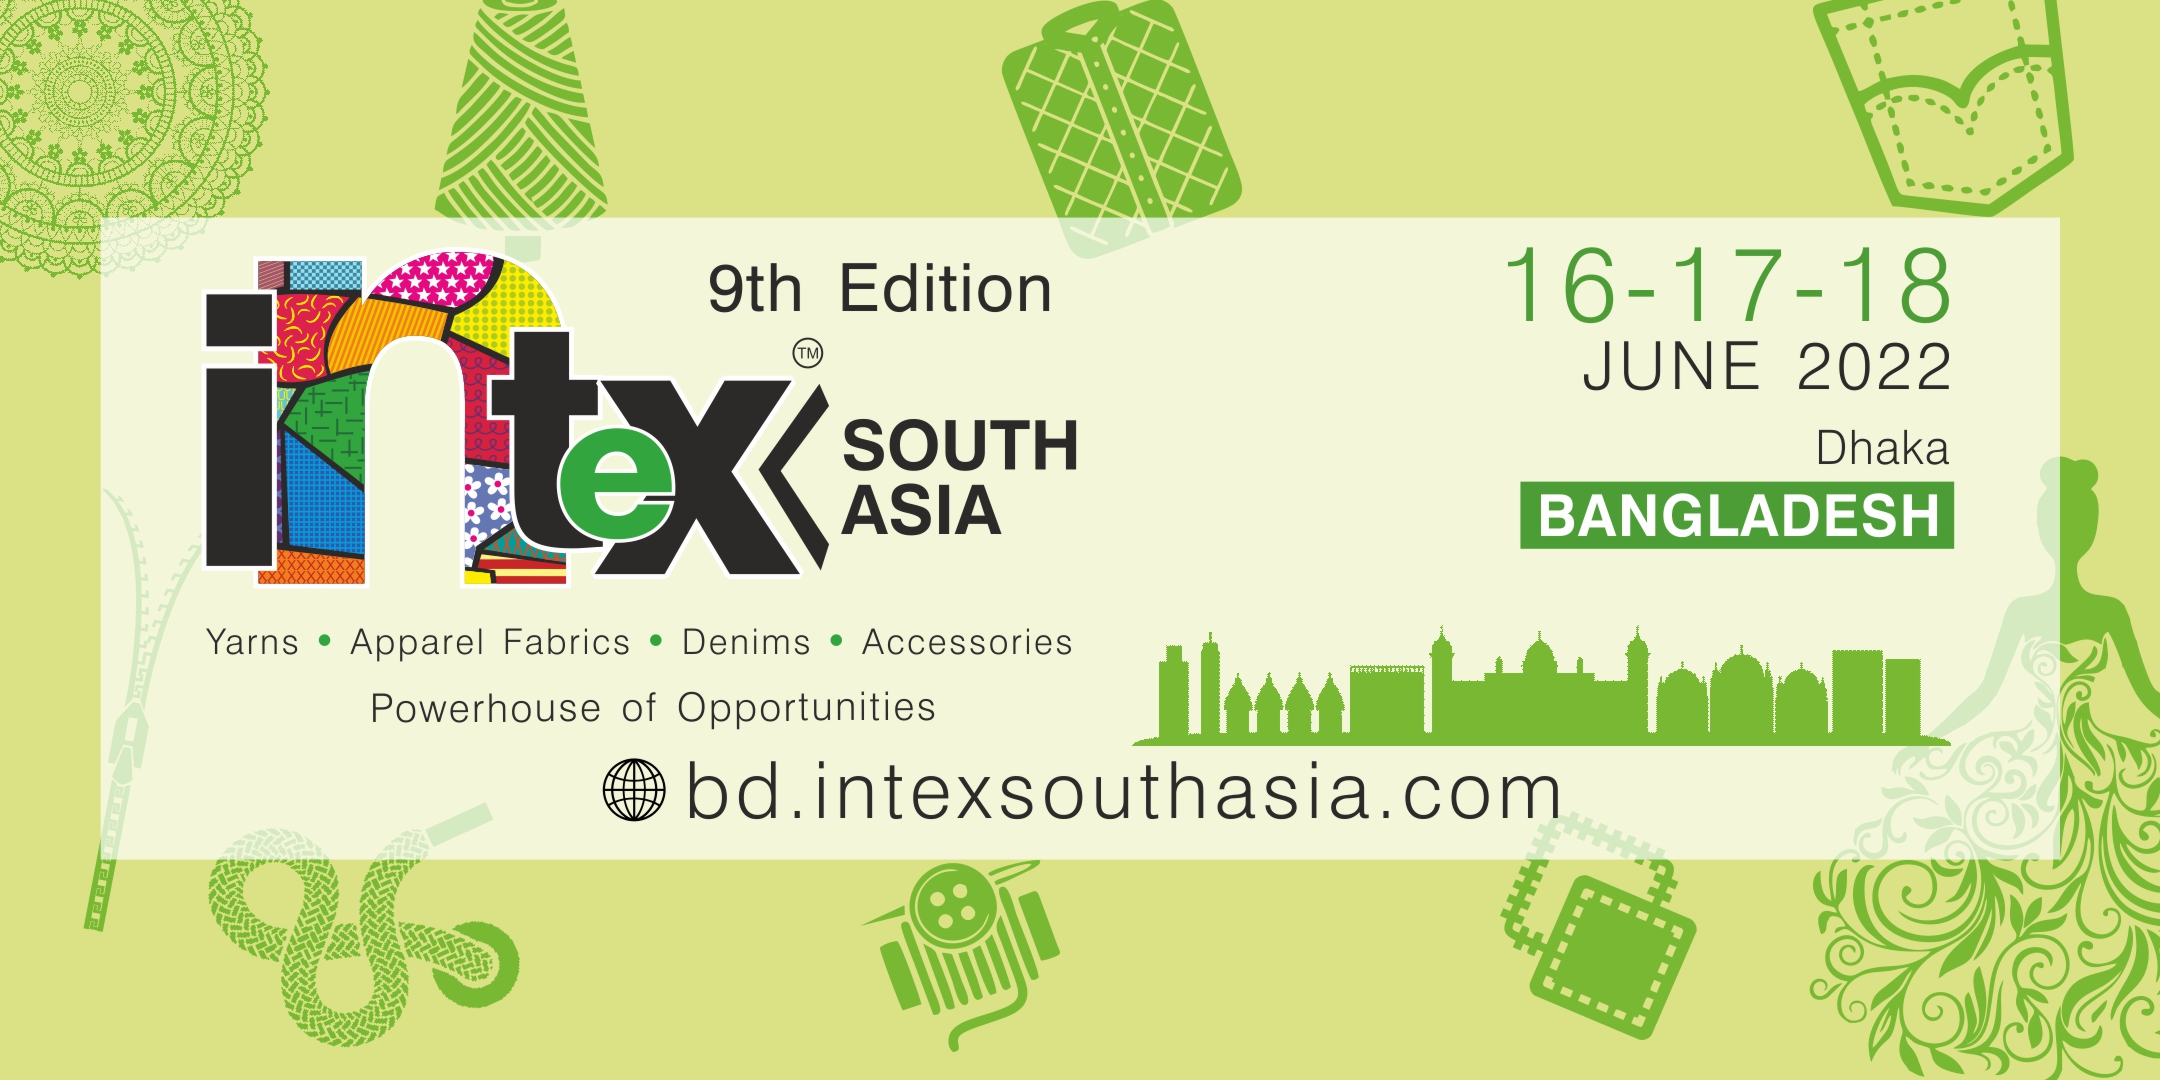 Intex South Asia Bangladesh, Bangladesh, Dhaka, Bangladesh